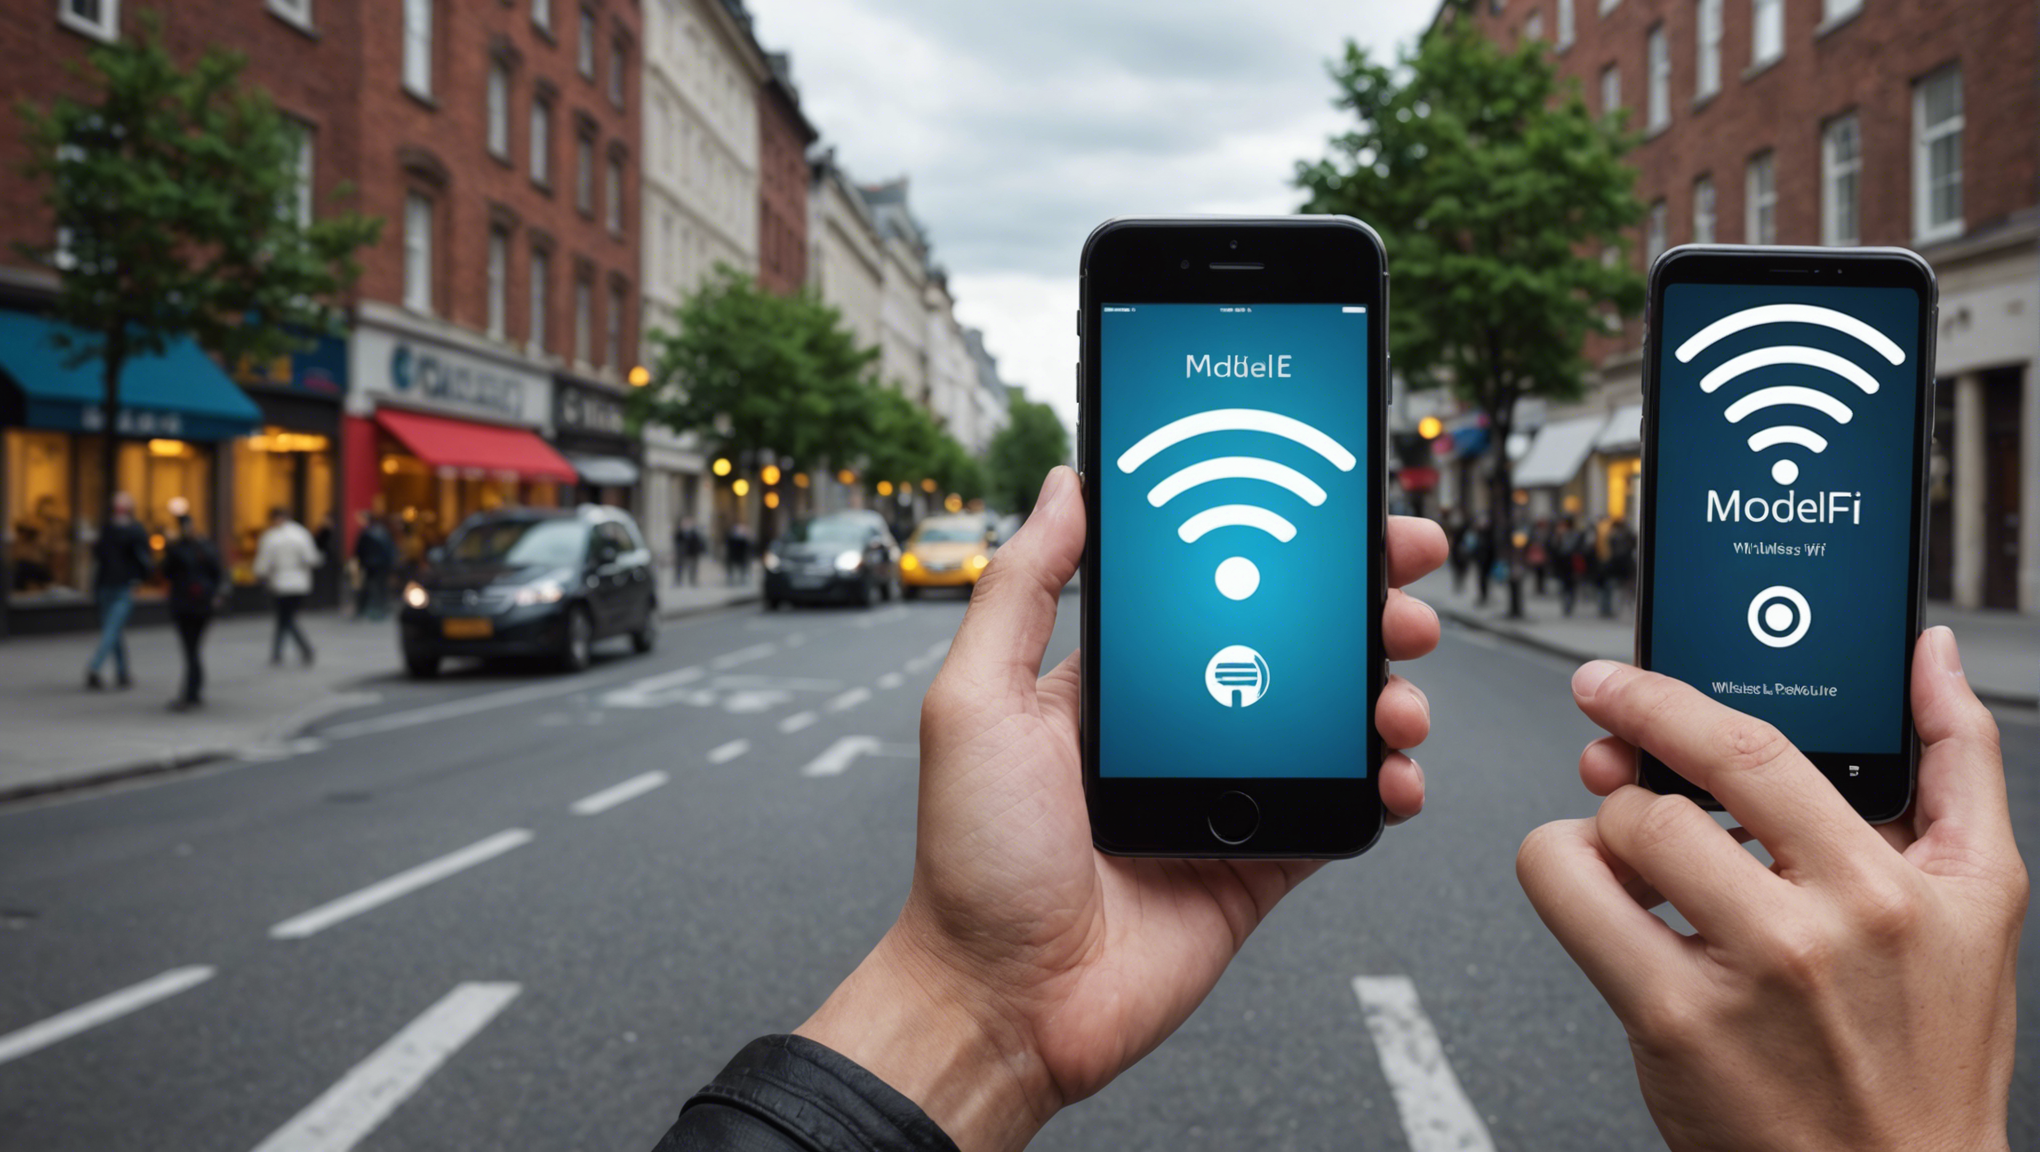 découvrez comment le wi-fi mobile est en train de révolutionner la connectivité sans fil et son impact sur notre manière de vivre et de travailler.